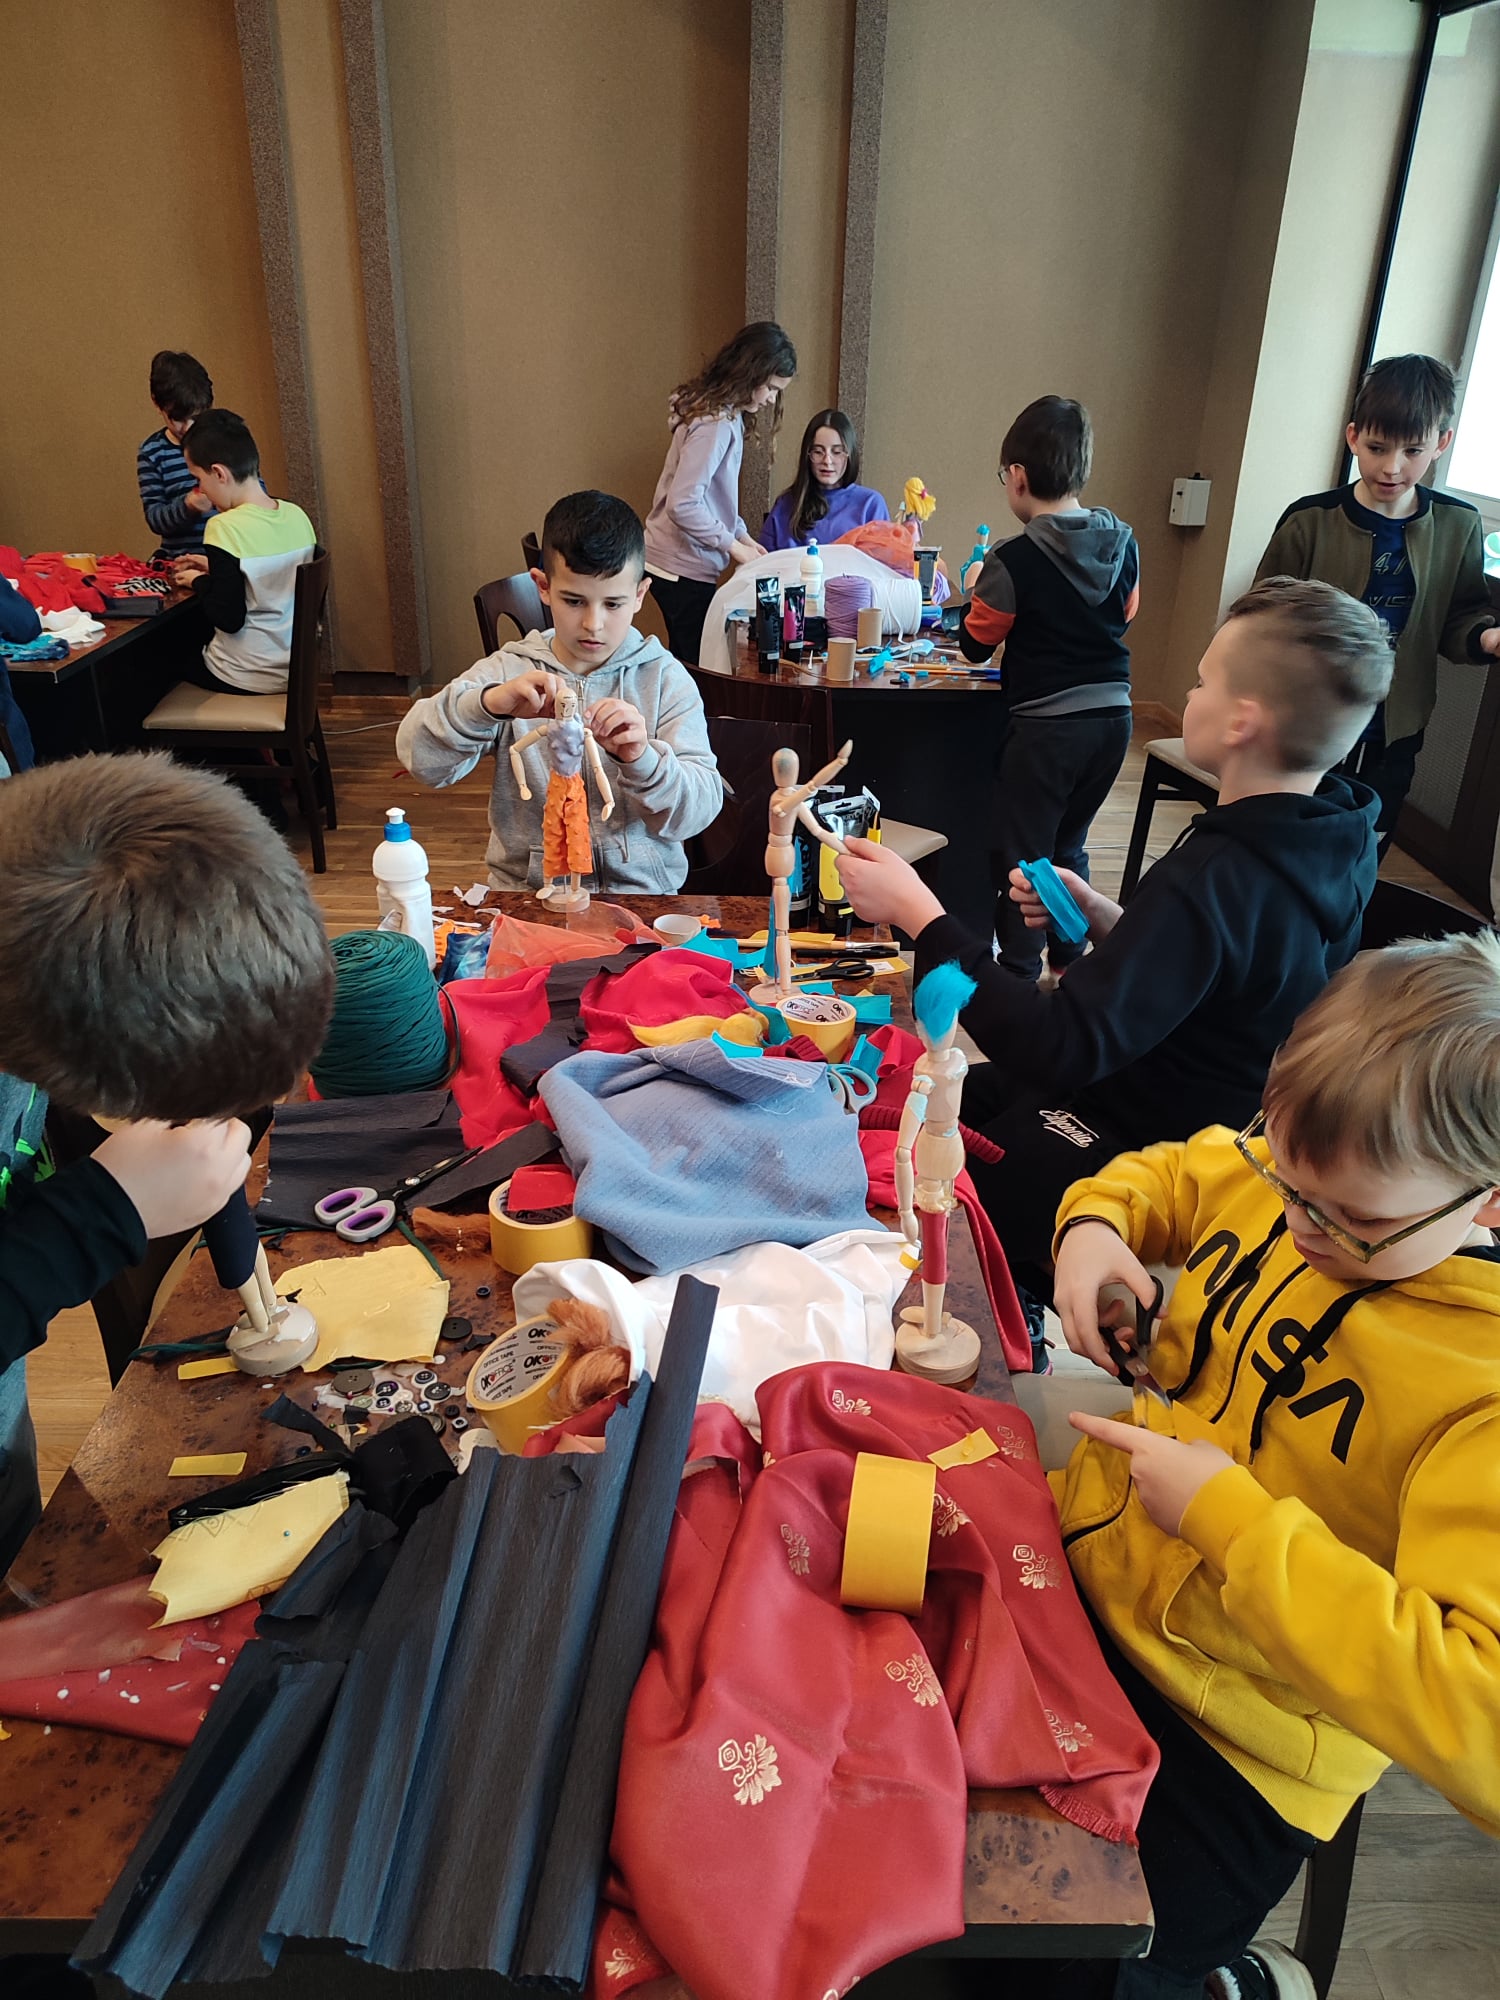 Grupa dzieci, chłopcy i dziewczynki, siedzący przy stolikach, przed nimi manekiny, materiały kolorowe